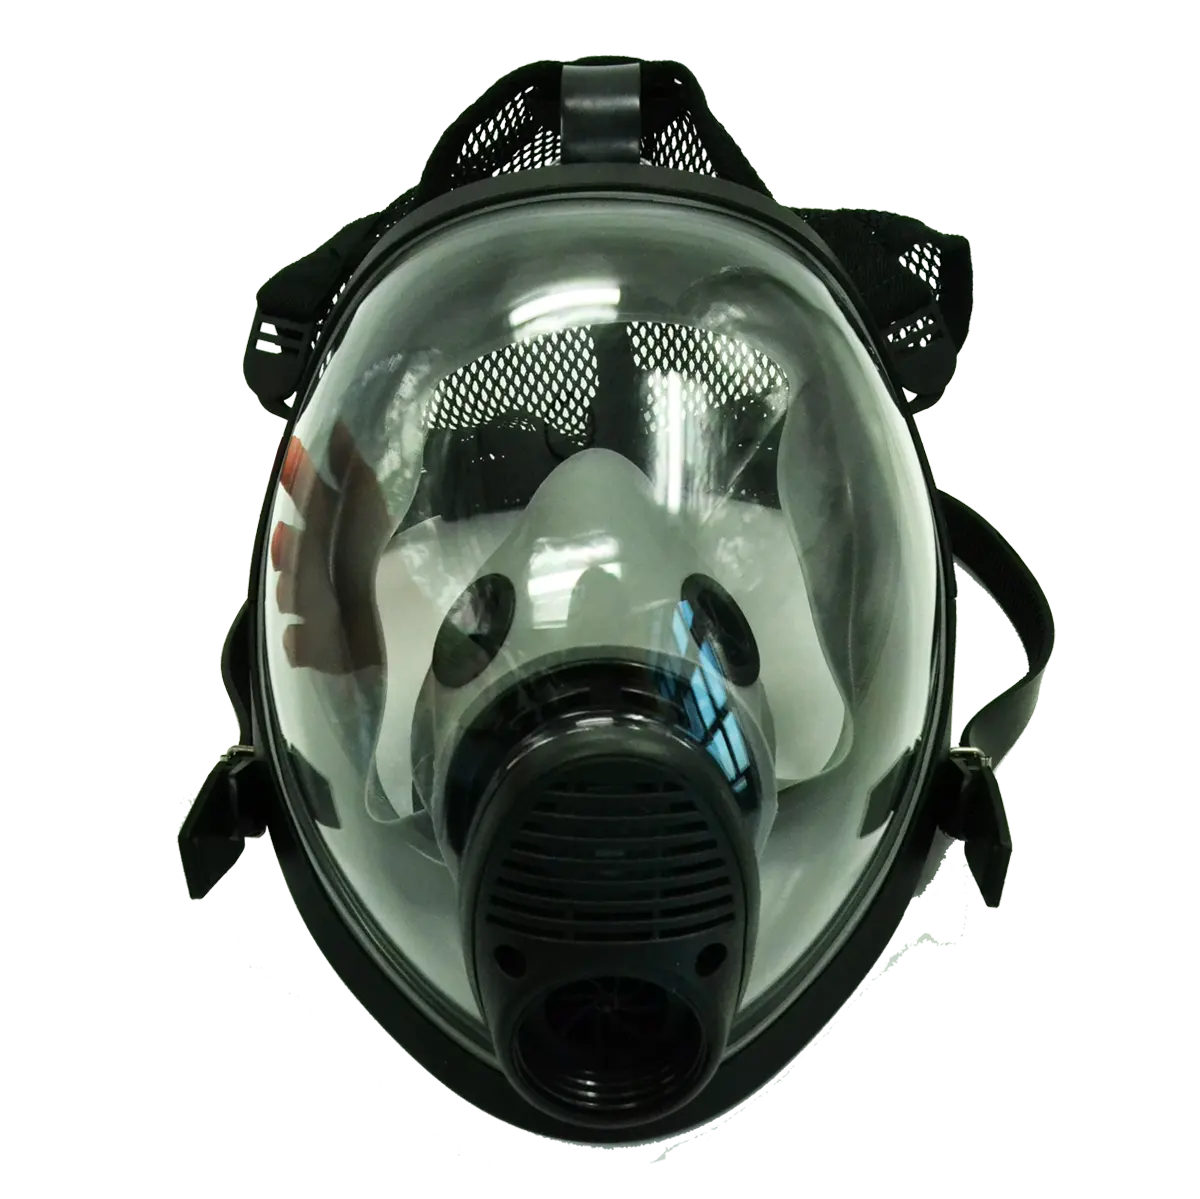 Respirateur chimique de sécurité intégral, masque à gaz avec respirateur chimique à cartouche unique pour l'industrie chimique